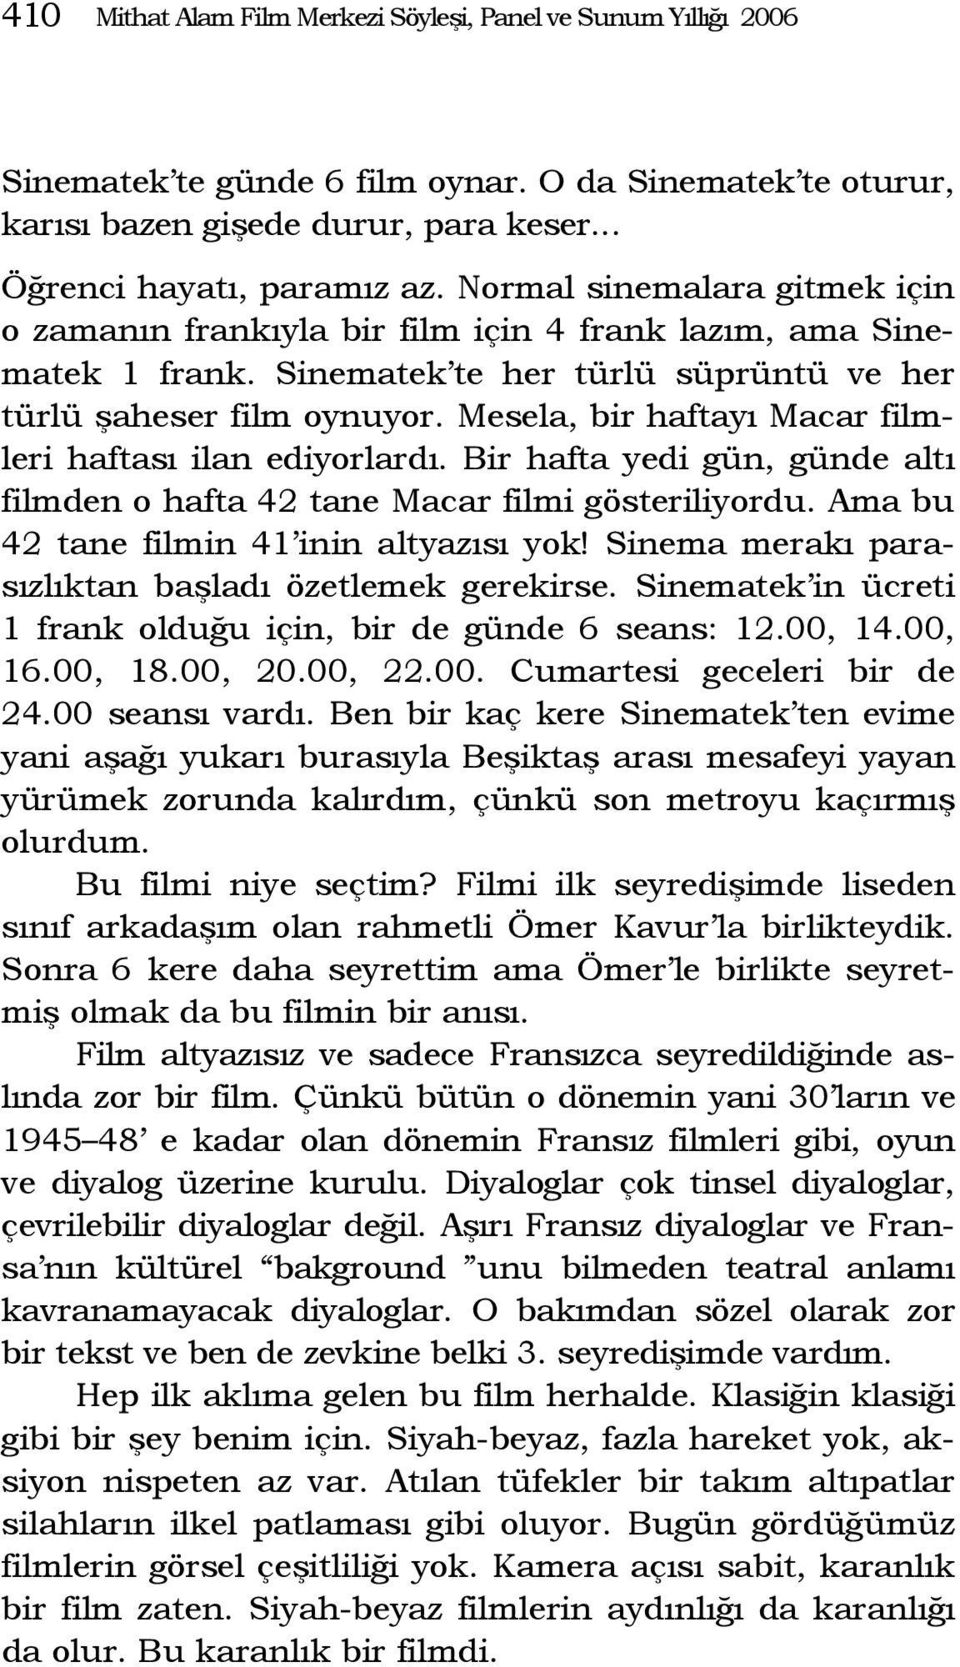 Mesela, bir haftayı Macar filmleri haftası ilan ediyorlardı. Bir hafta yedi gün, günde altı filmden o hafta 42 tane Macar filmi gösteriliyordu. Ama bu 42 tane filmin 41 inin altyazısı yok!